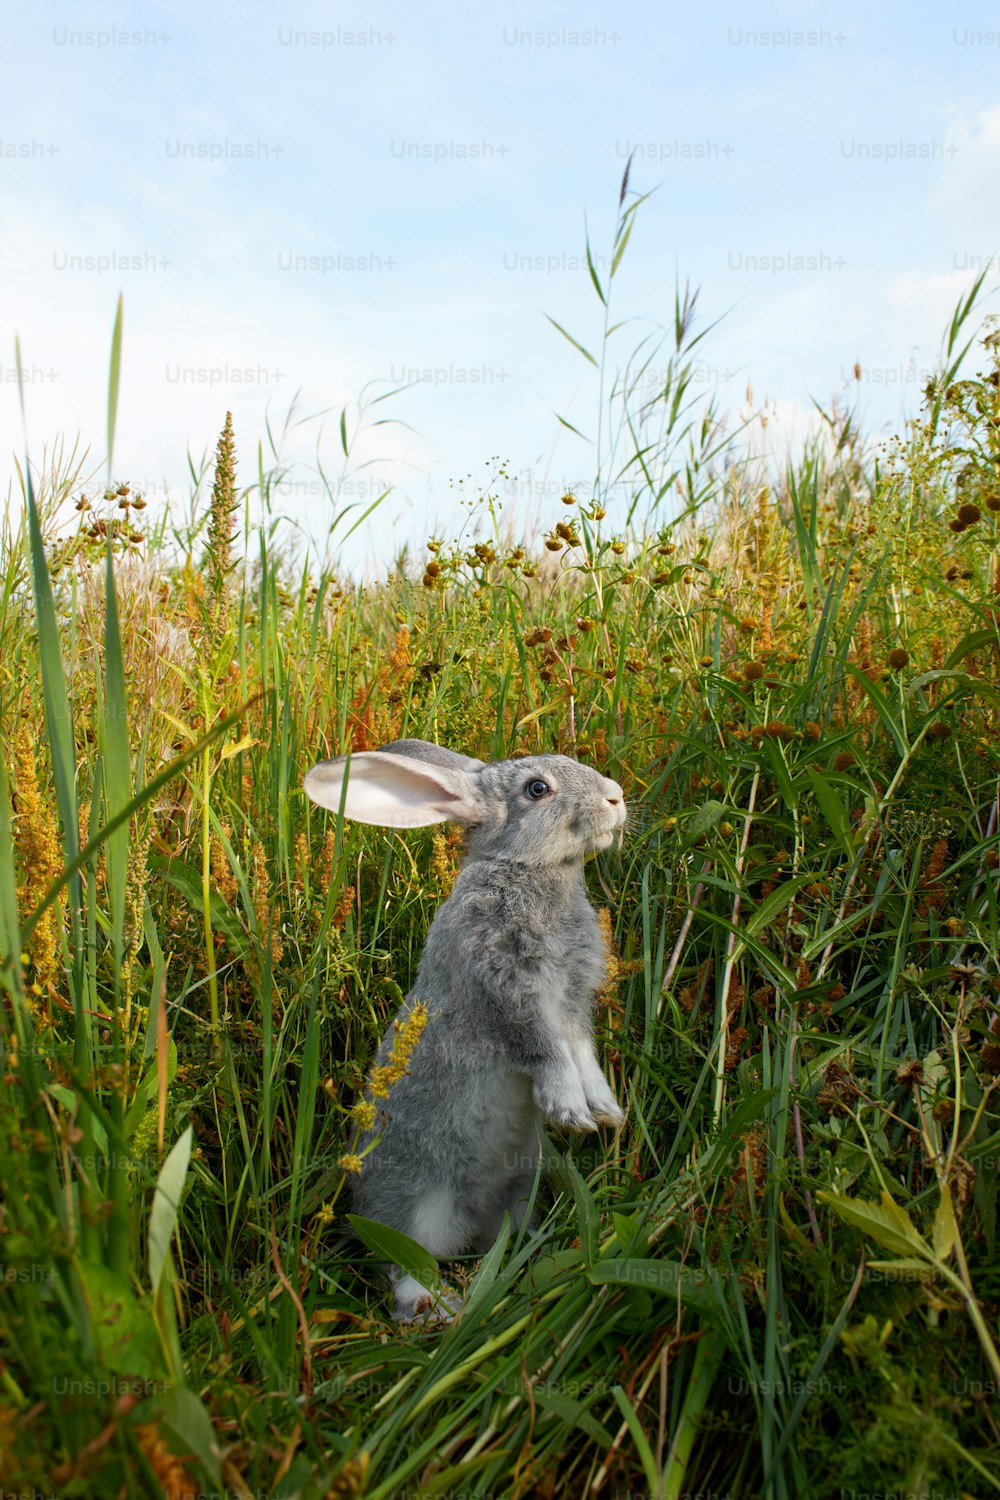 키 큰 풀밭 한가운데에 앉아 있는 토끼